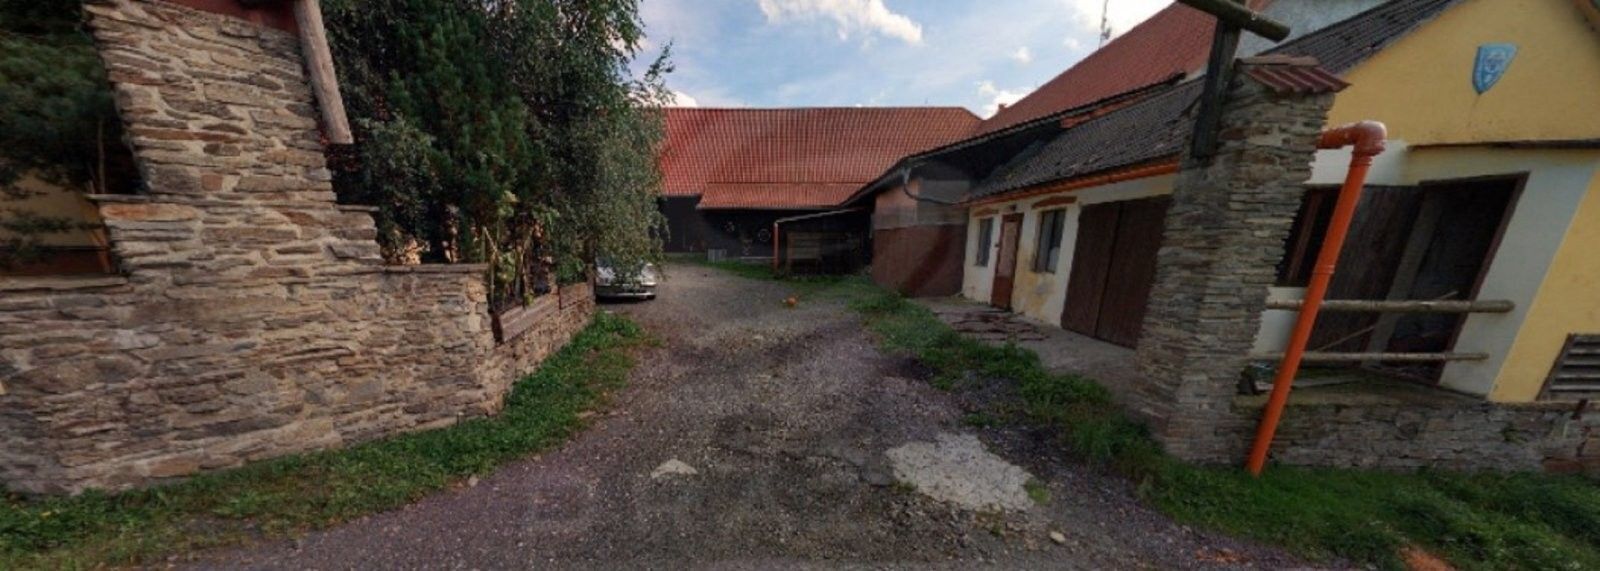 Zemědělské usedlosti, Libětice, Hlavňovice, 400 m²